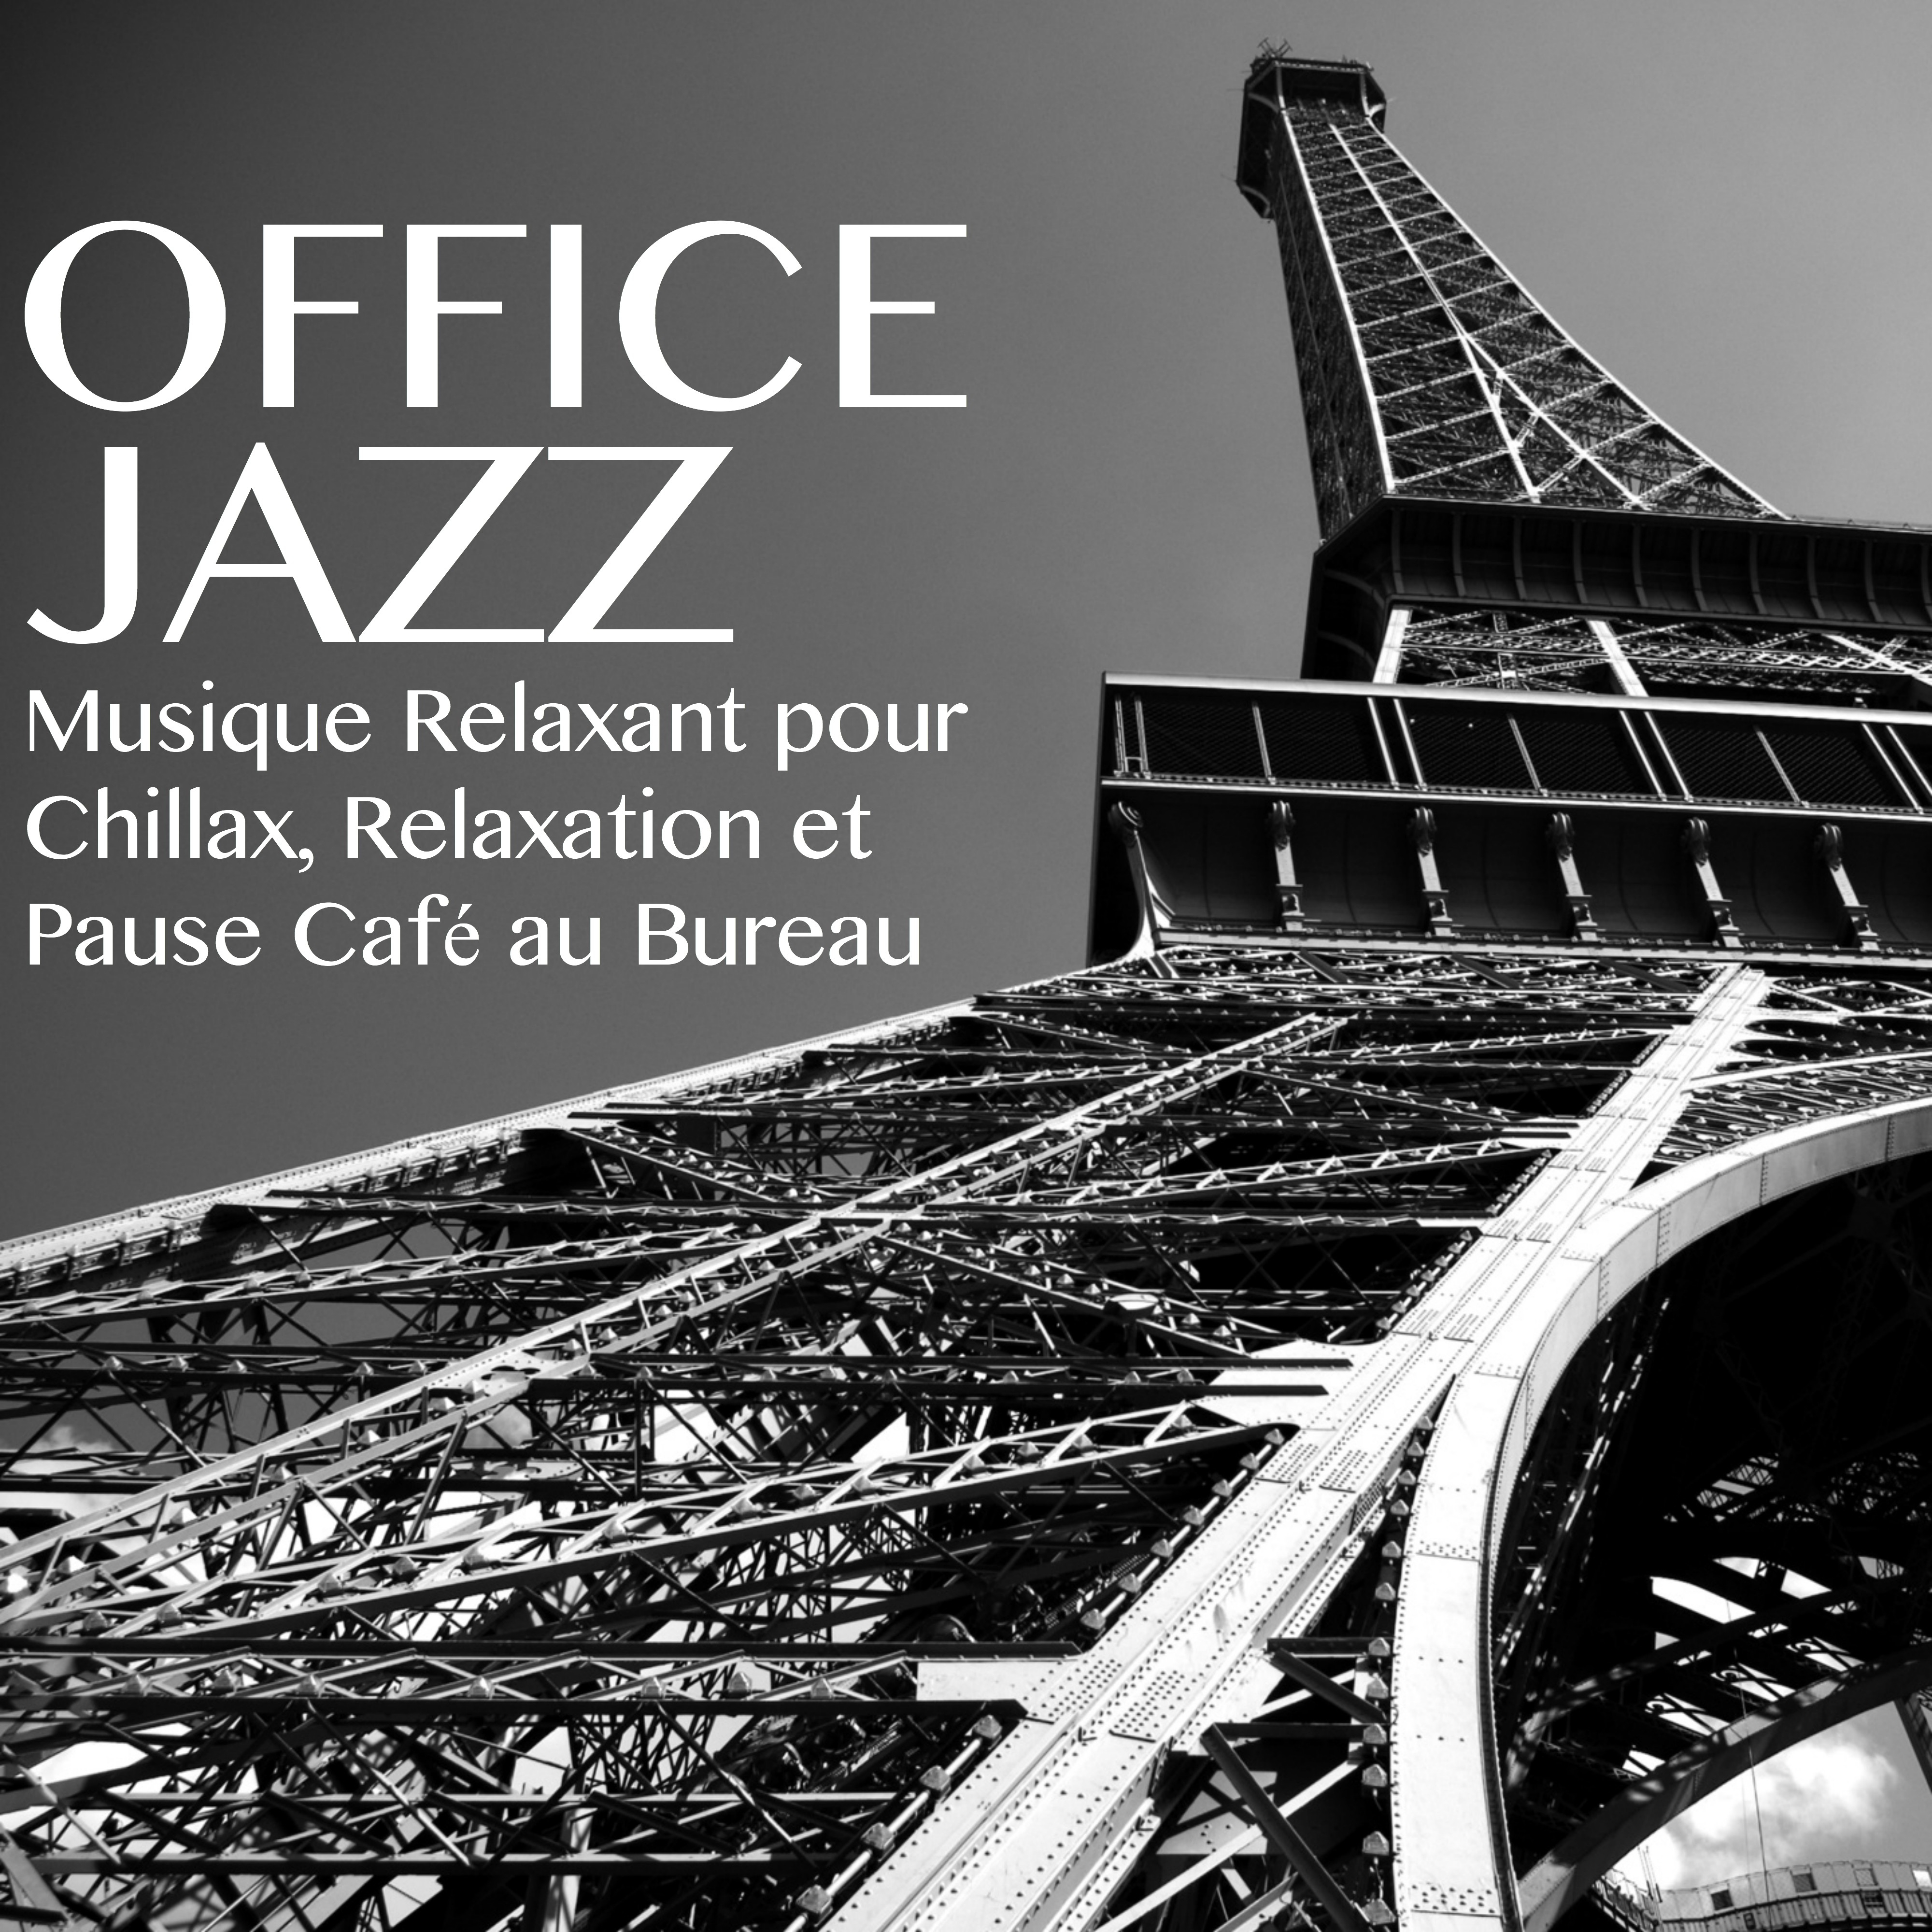 Office Jazz Music  Musique Relaxant pour Chillax, Relaxation et Pause Cafe au Bureau